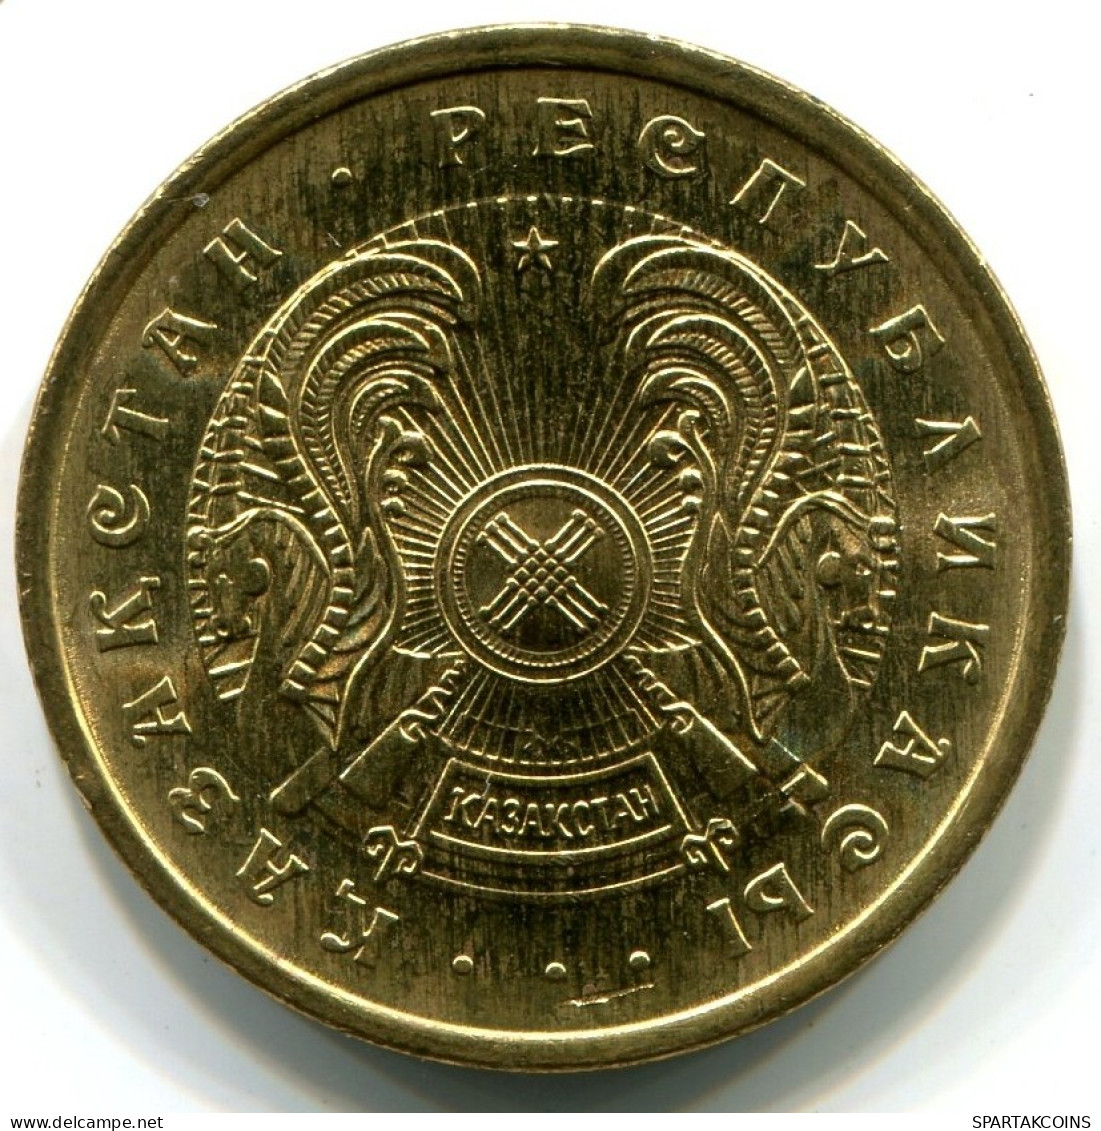 50 TIYN 1993 KAZAKHSTAN UNC Coin #5 #W11173.U.A - Kasachstan